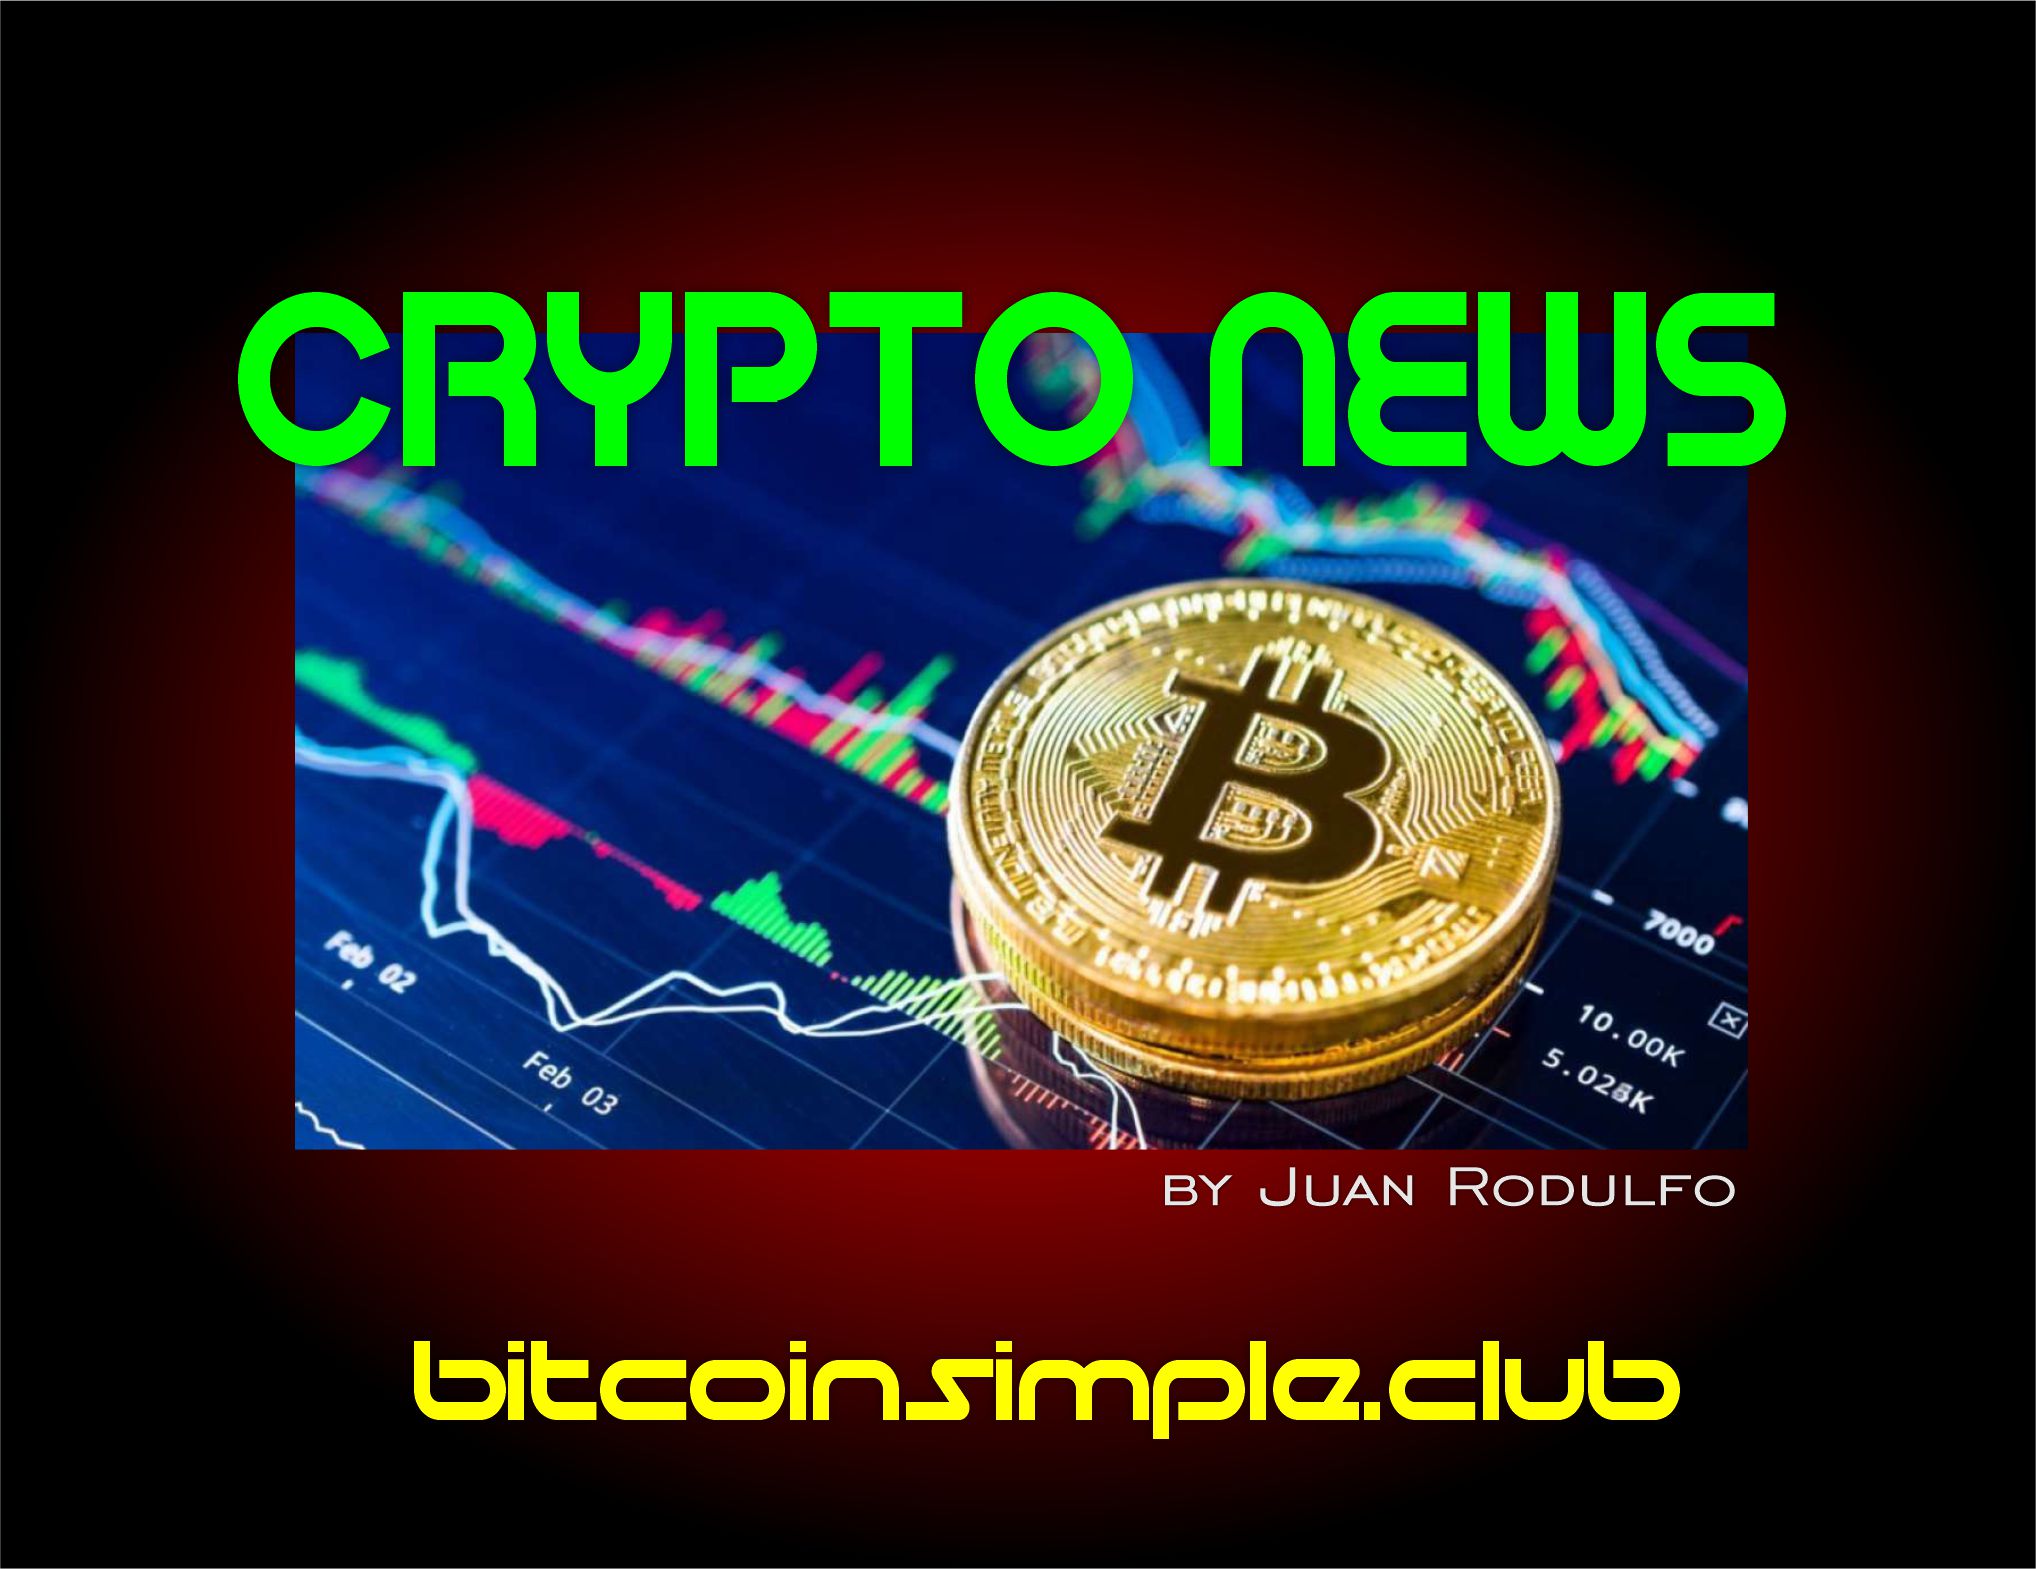 Crypto News by Juan Rodulfo